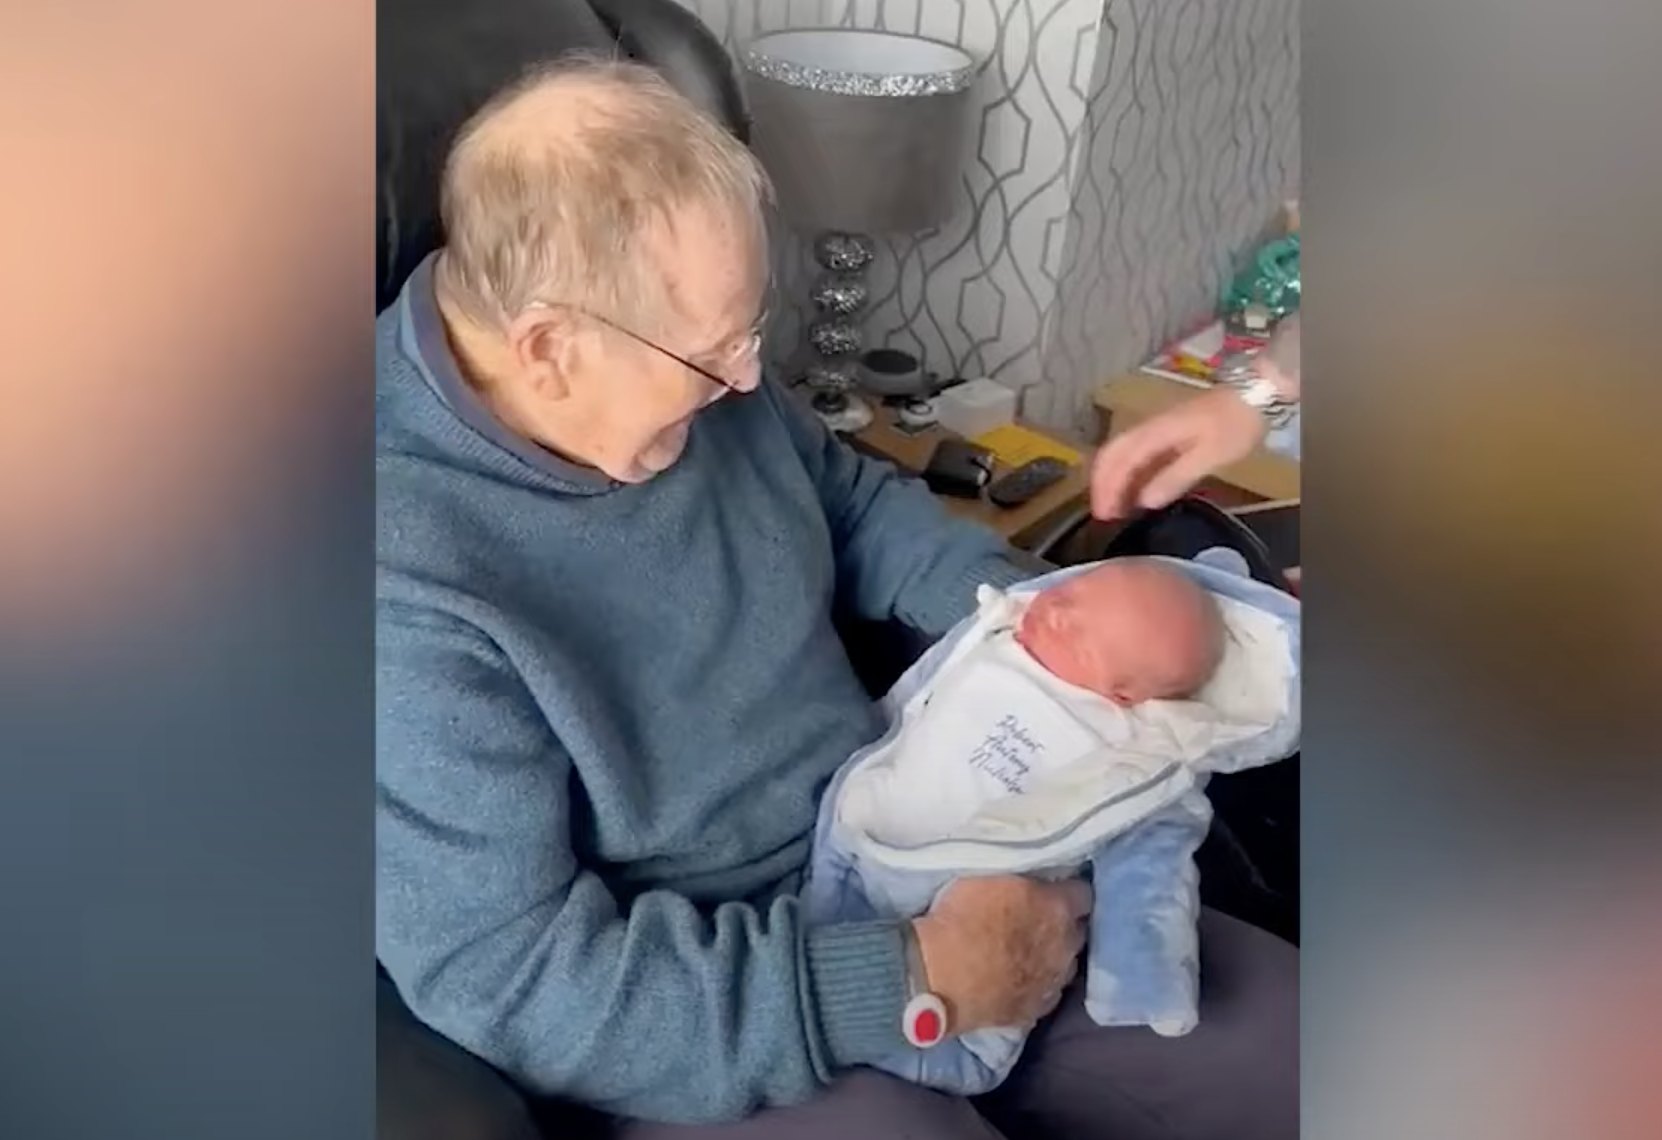 Abuelo rompe a llorar cuando le sorprenden con su nieto recién nacido, al que han puesto su nombre